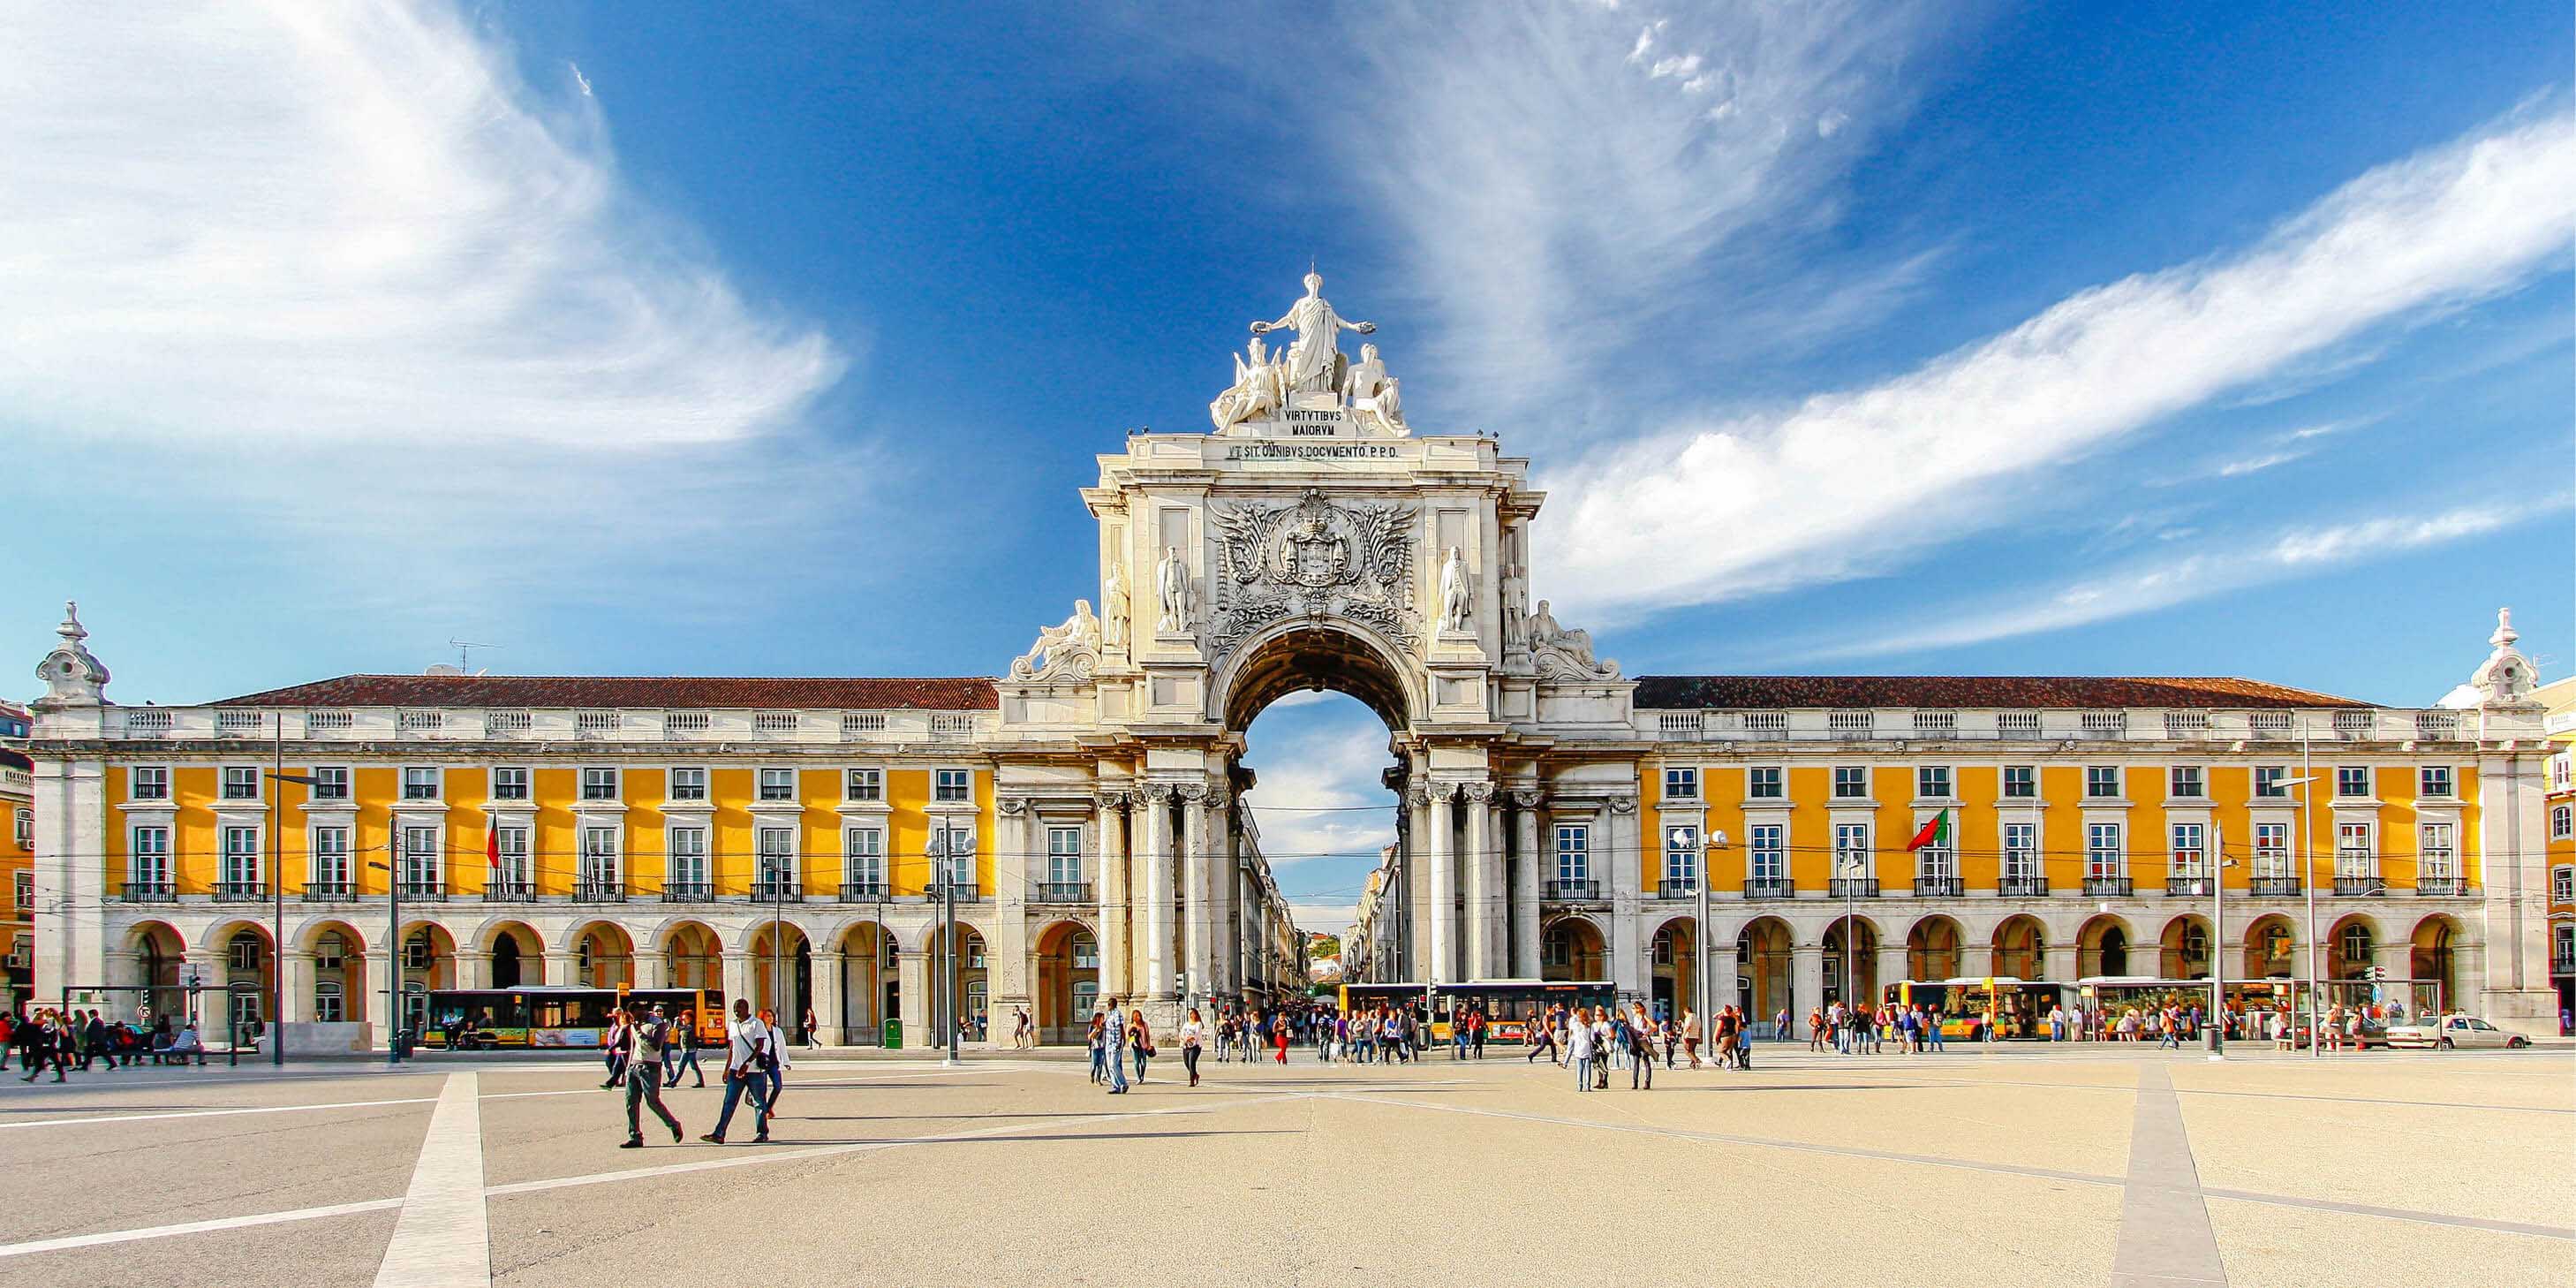 Praça do Comércio in Lisbon, Portugal